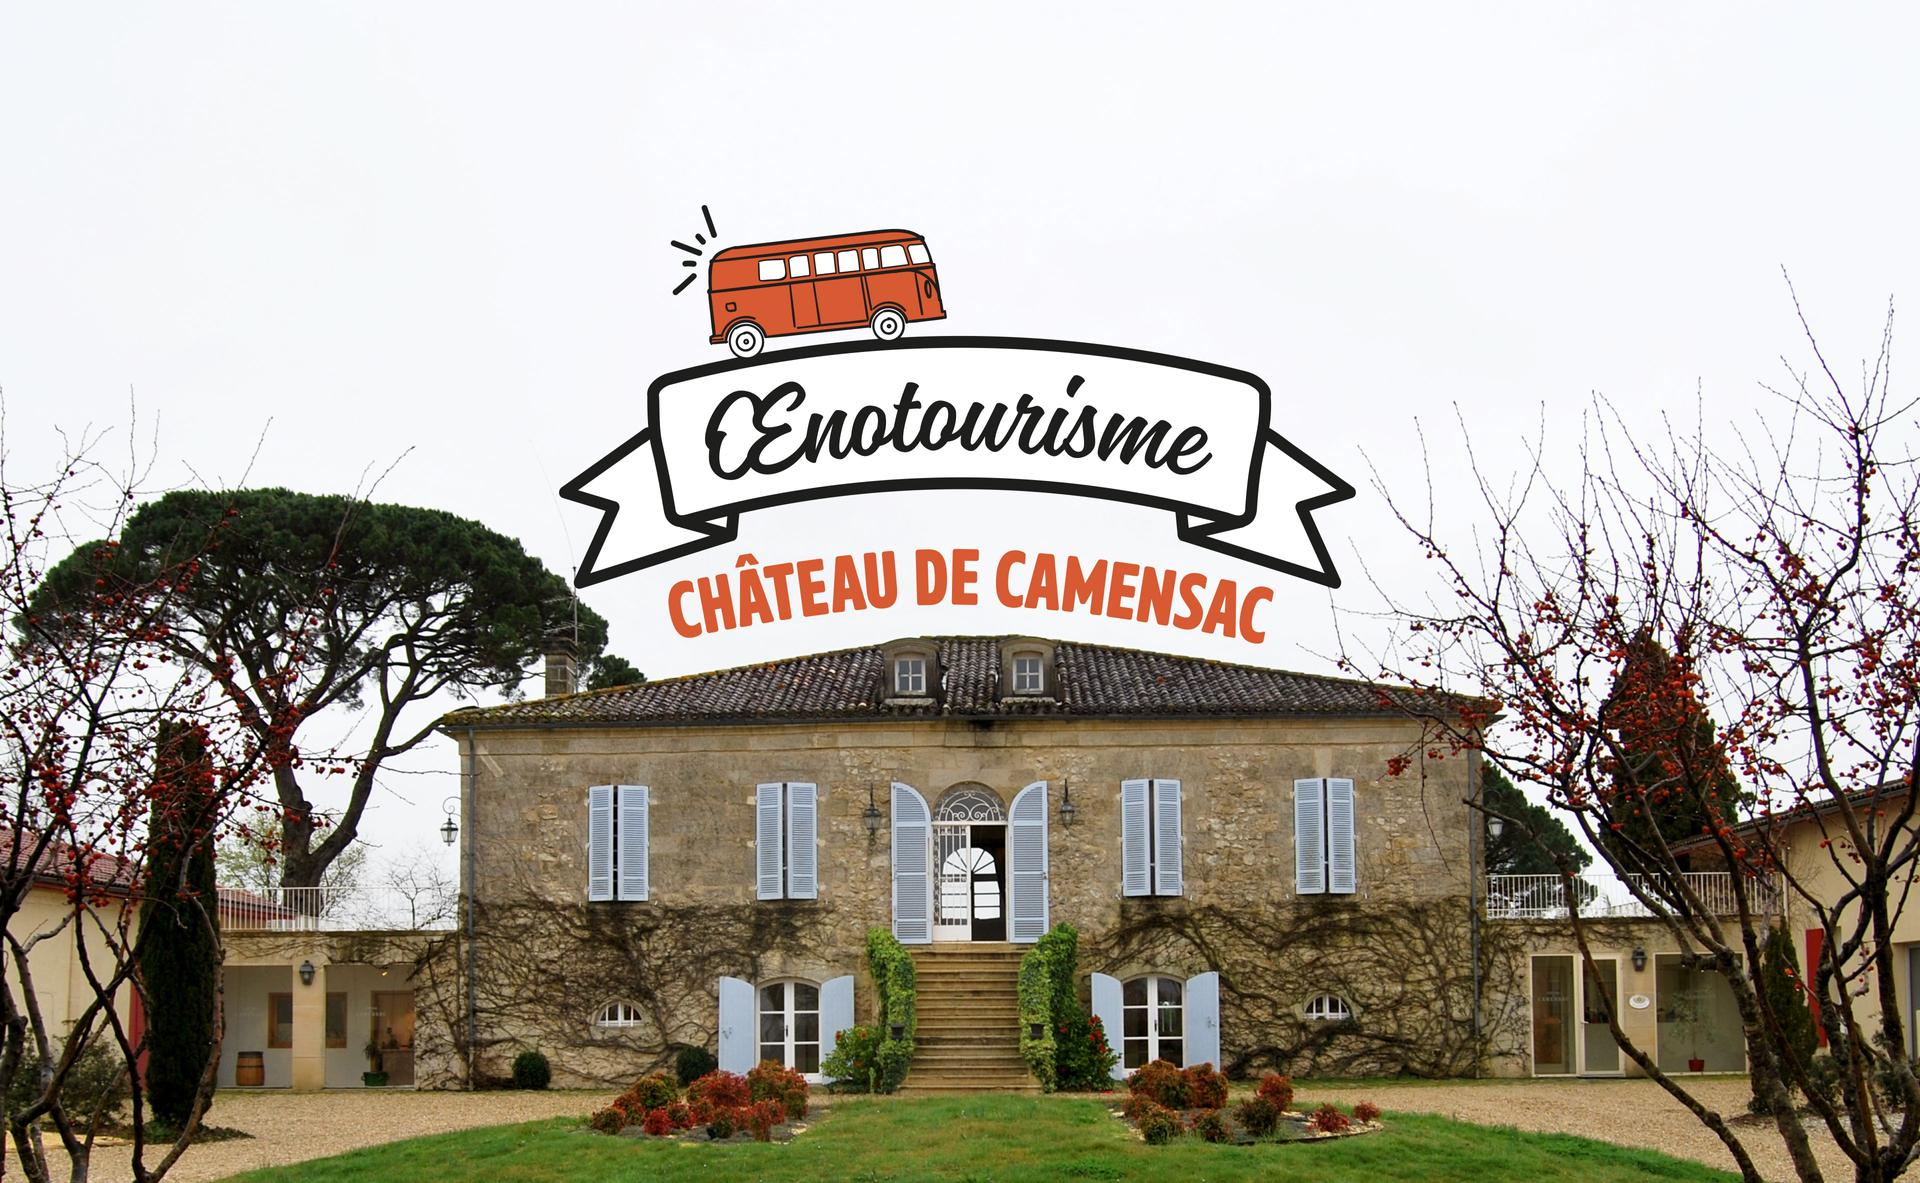 Les offres œnotouristiques du Château de Camensac